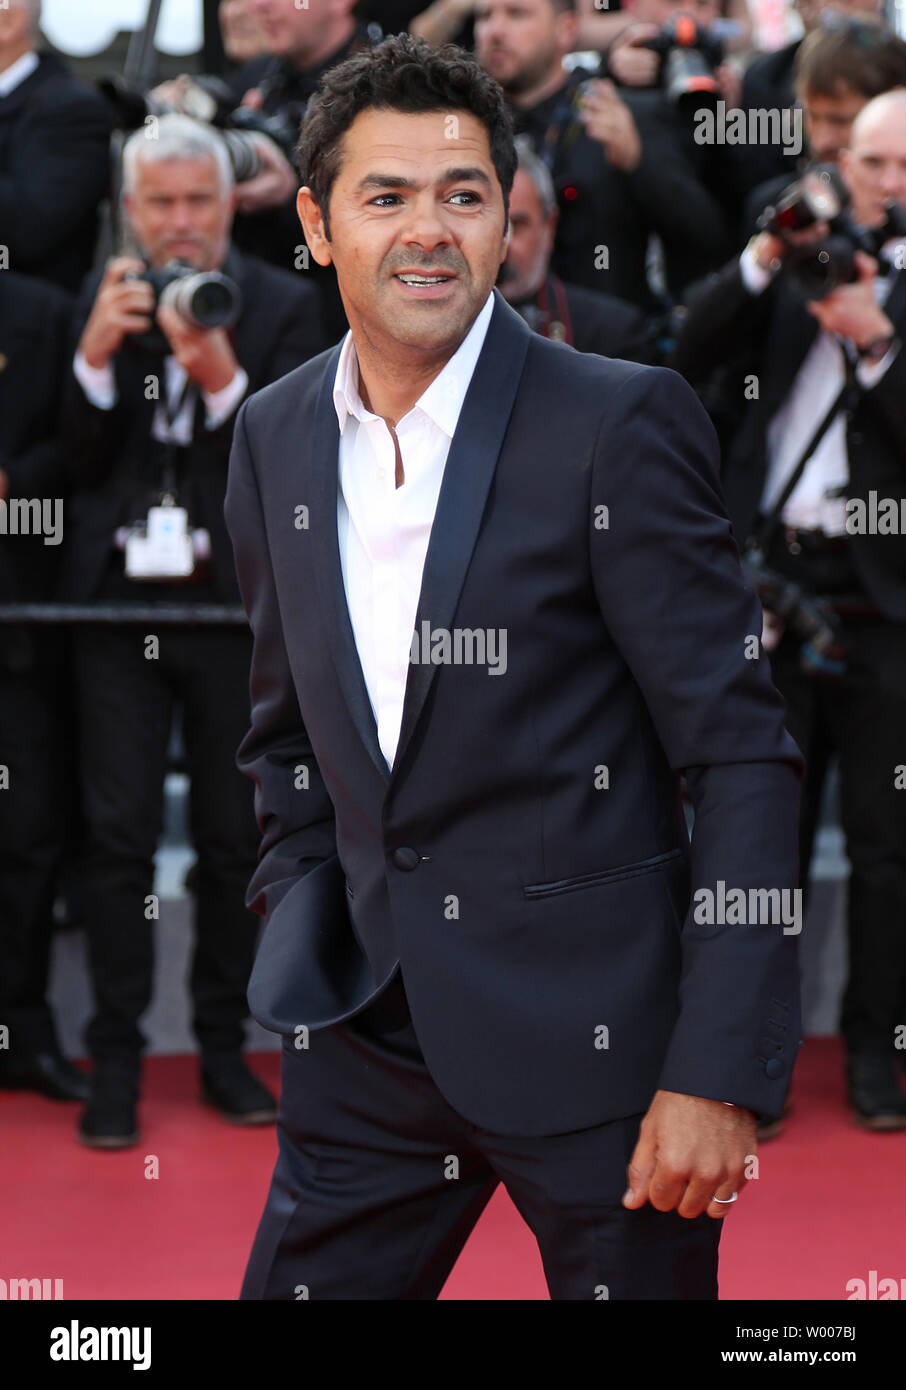 Jamel Debbouze arriva sul tappeto rosso prima della proiezione del film "Les Miserables' alla 72esima annuale internazionale di Cannes Film Festival di Cannes, Francia il 15 maggio 2019. Foto di David Silpa/UPI Foto Stock